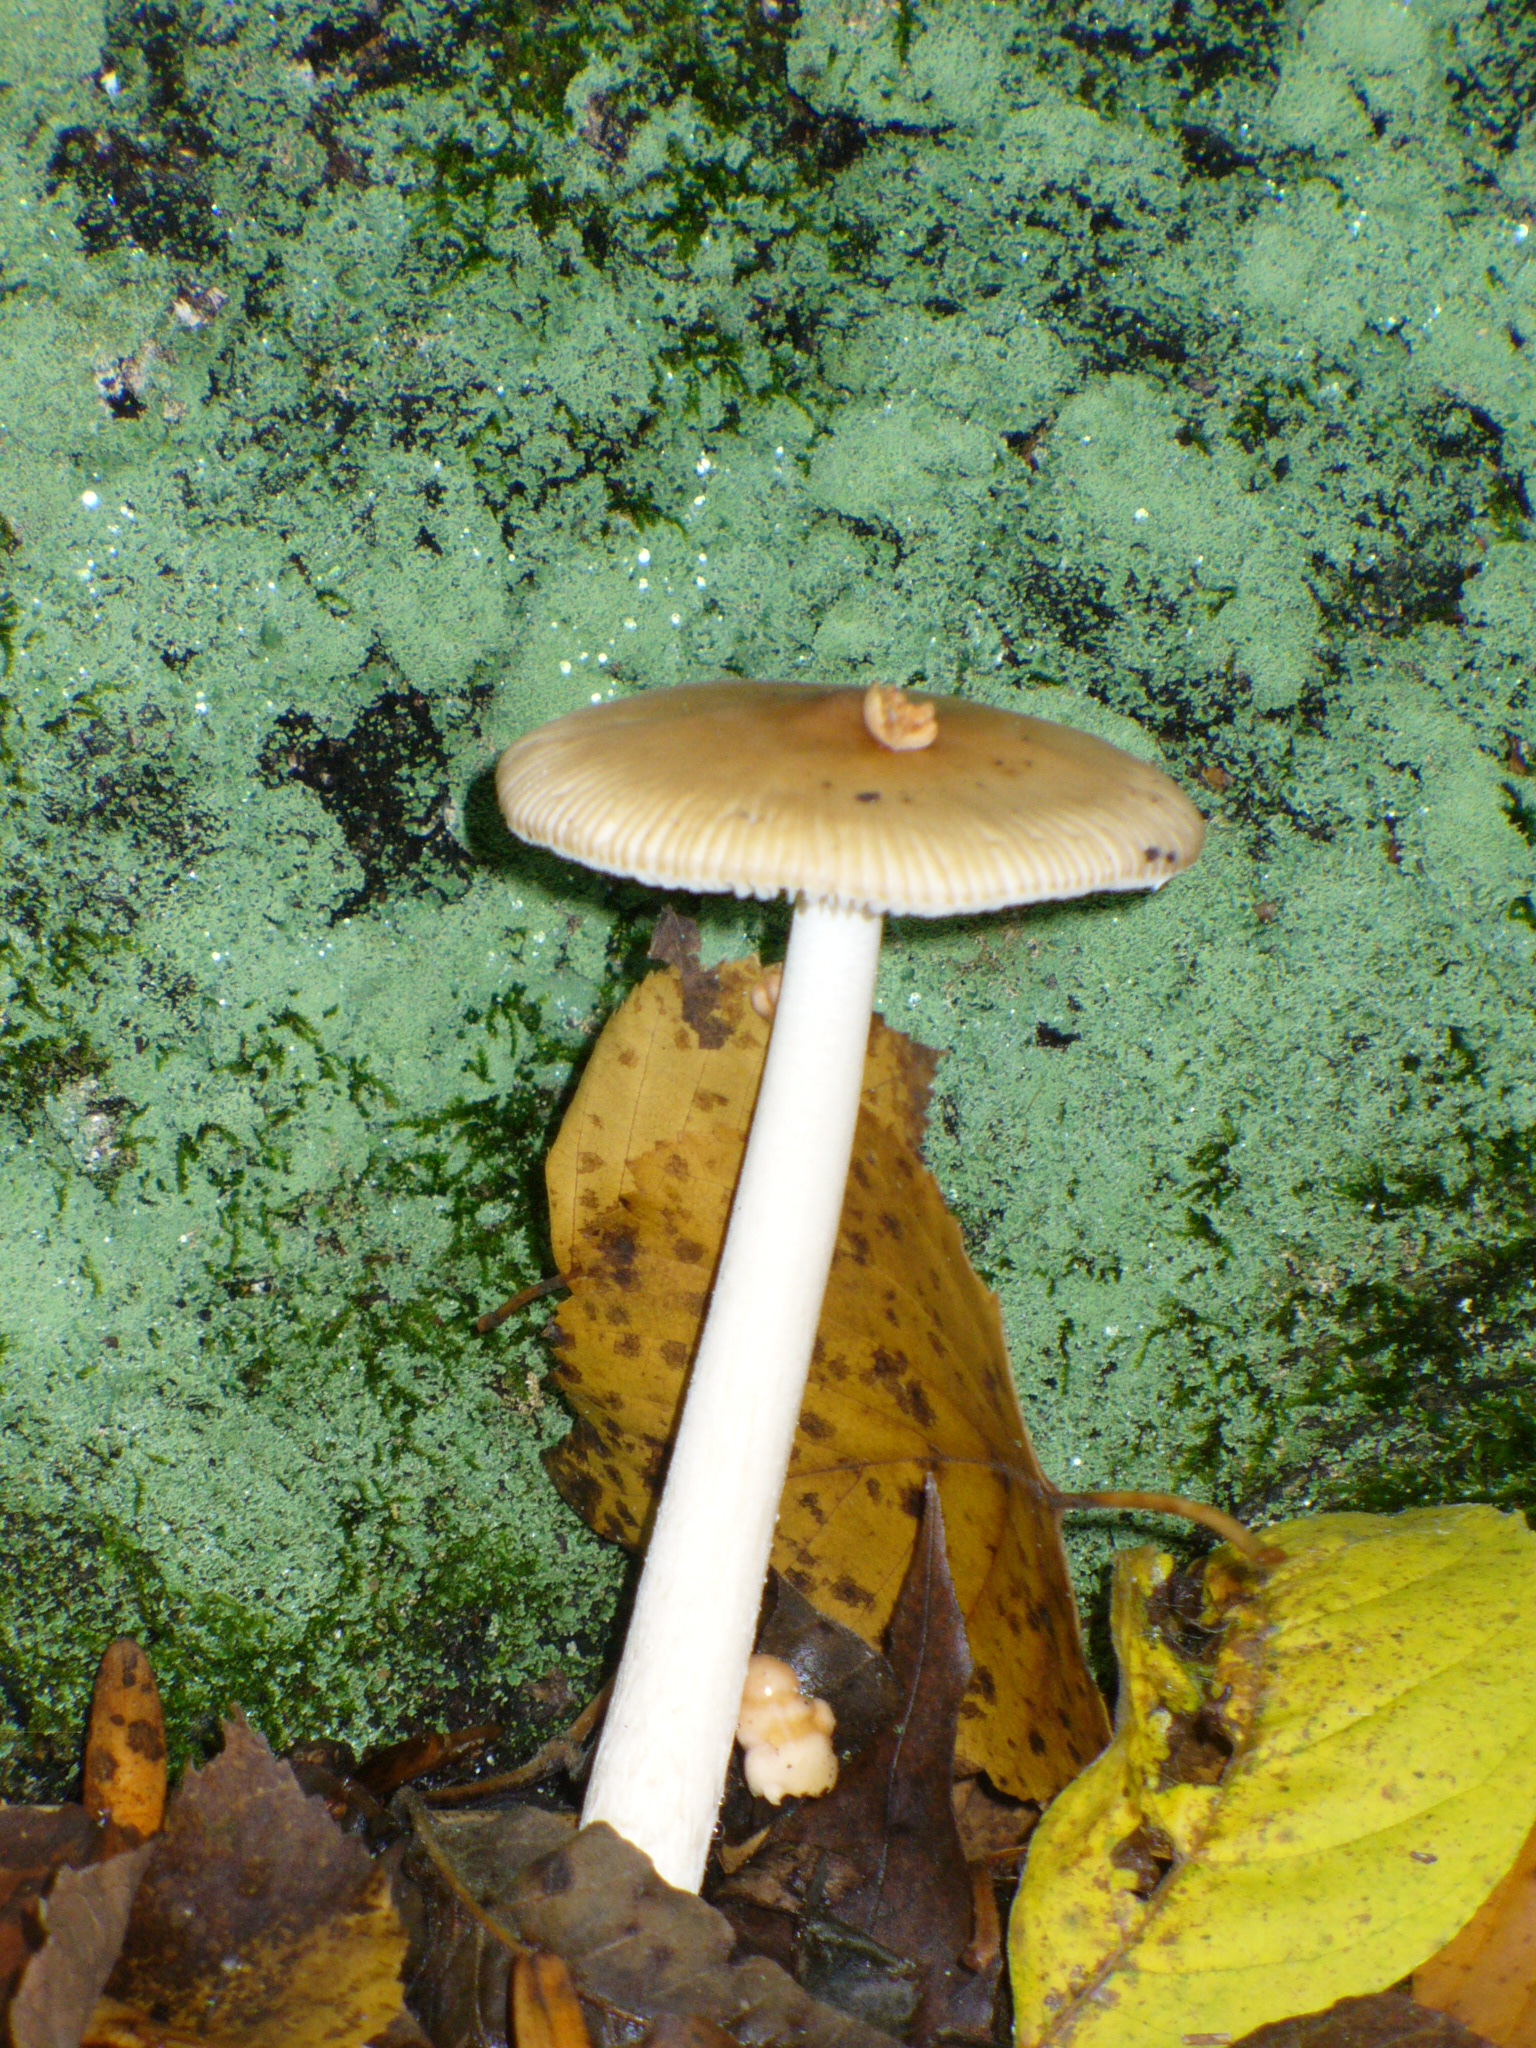 Unkown Mushroom